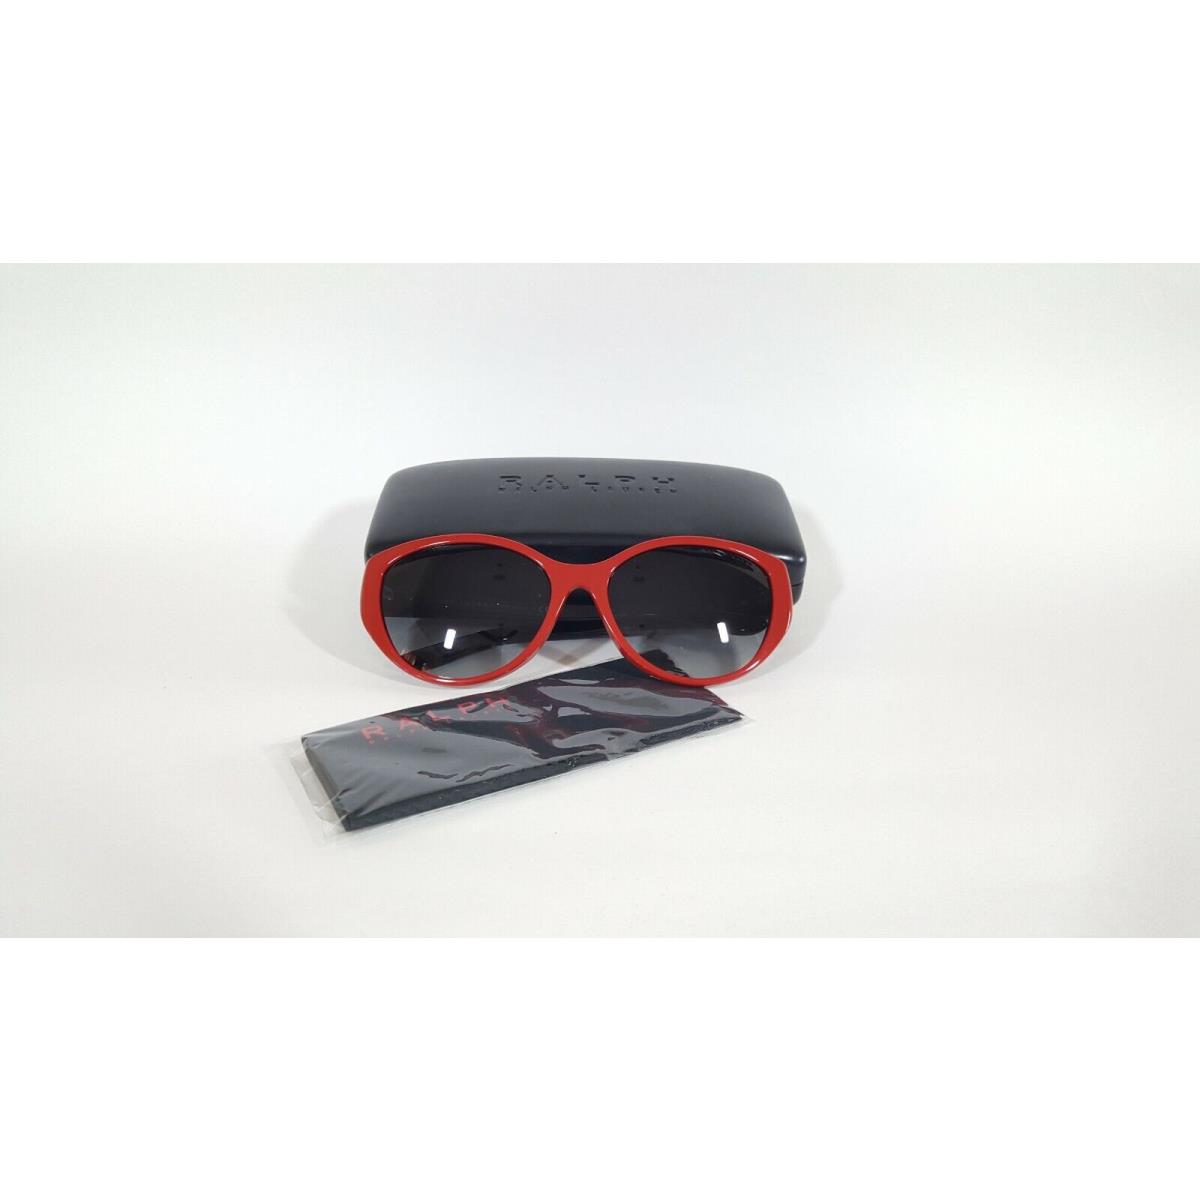 Ralph Lauren sunglasses  - Red Frame, Gray Lens